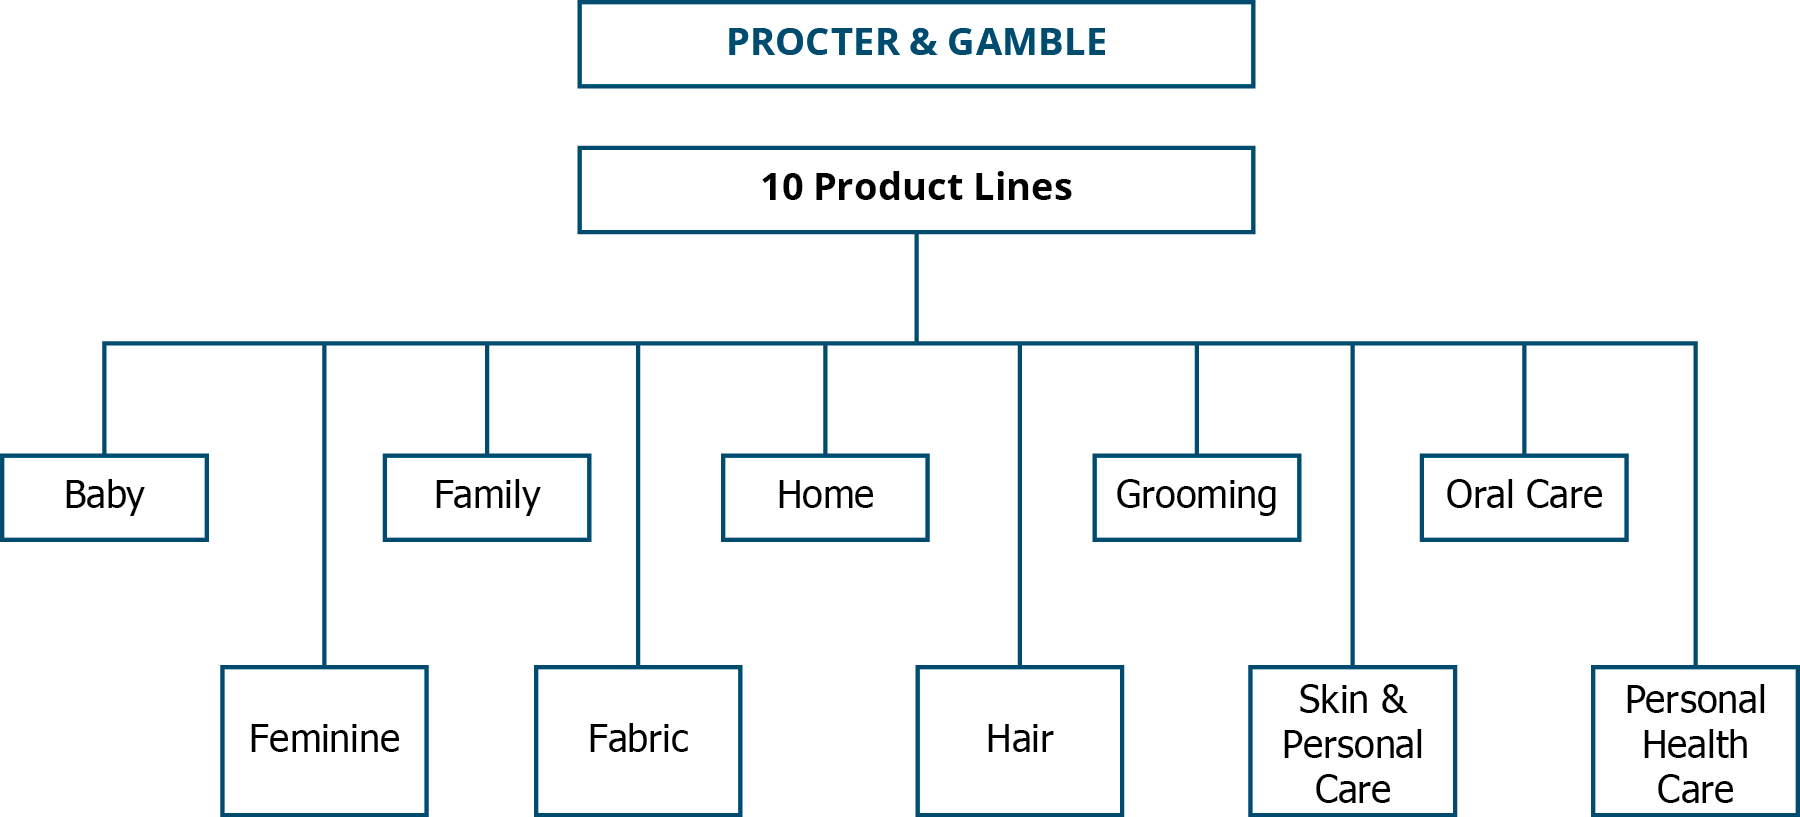 Organigramme de Procter & Gamble montrant les 10 gammes de produits : bébé, féminin, familial, textile, maison, cheveux, soins capillaires, soins de la peau et du corps, soins bucco-dentaires et soins de santé personnels.